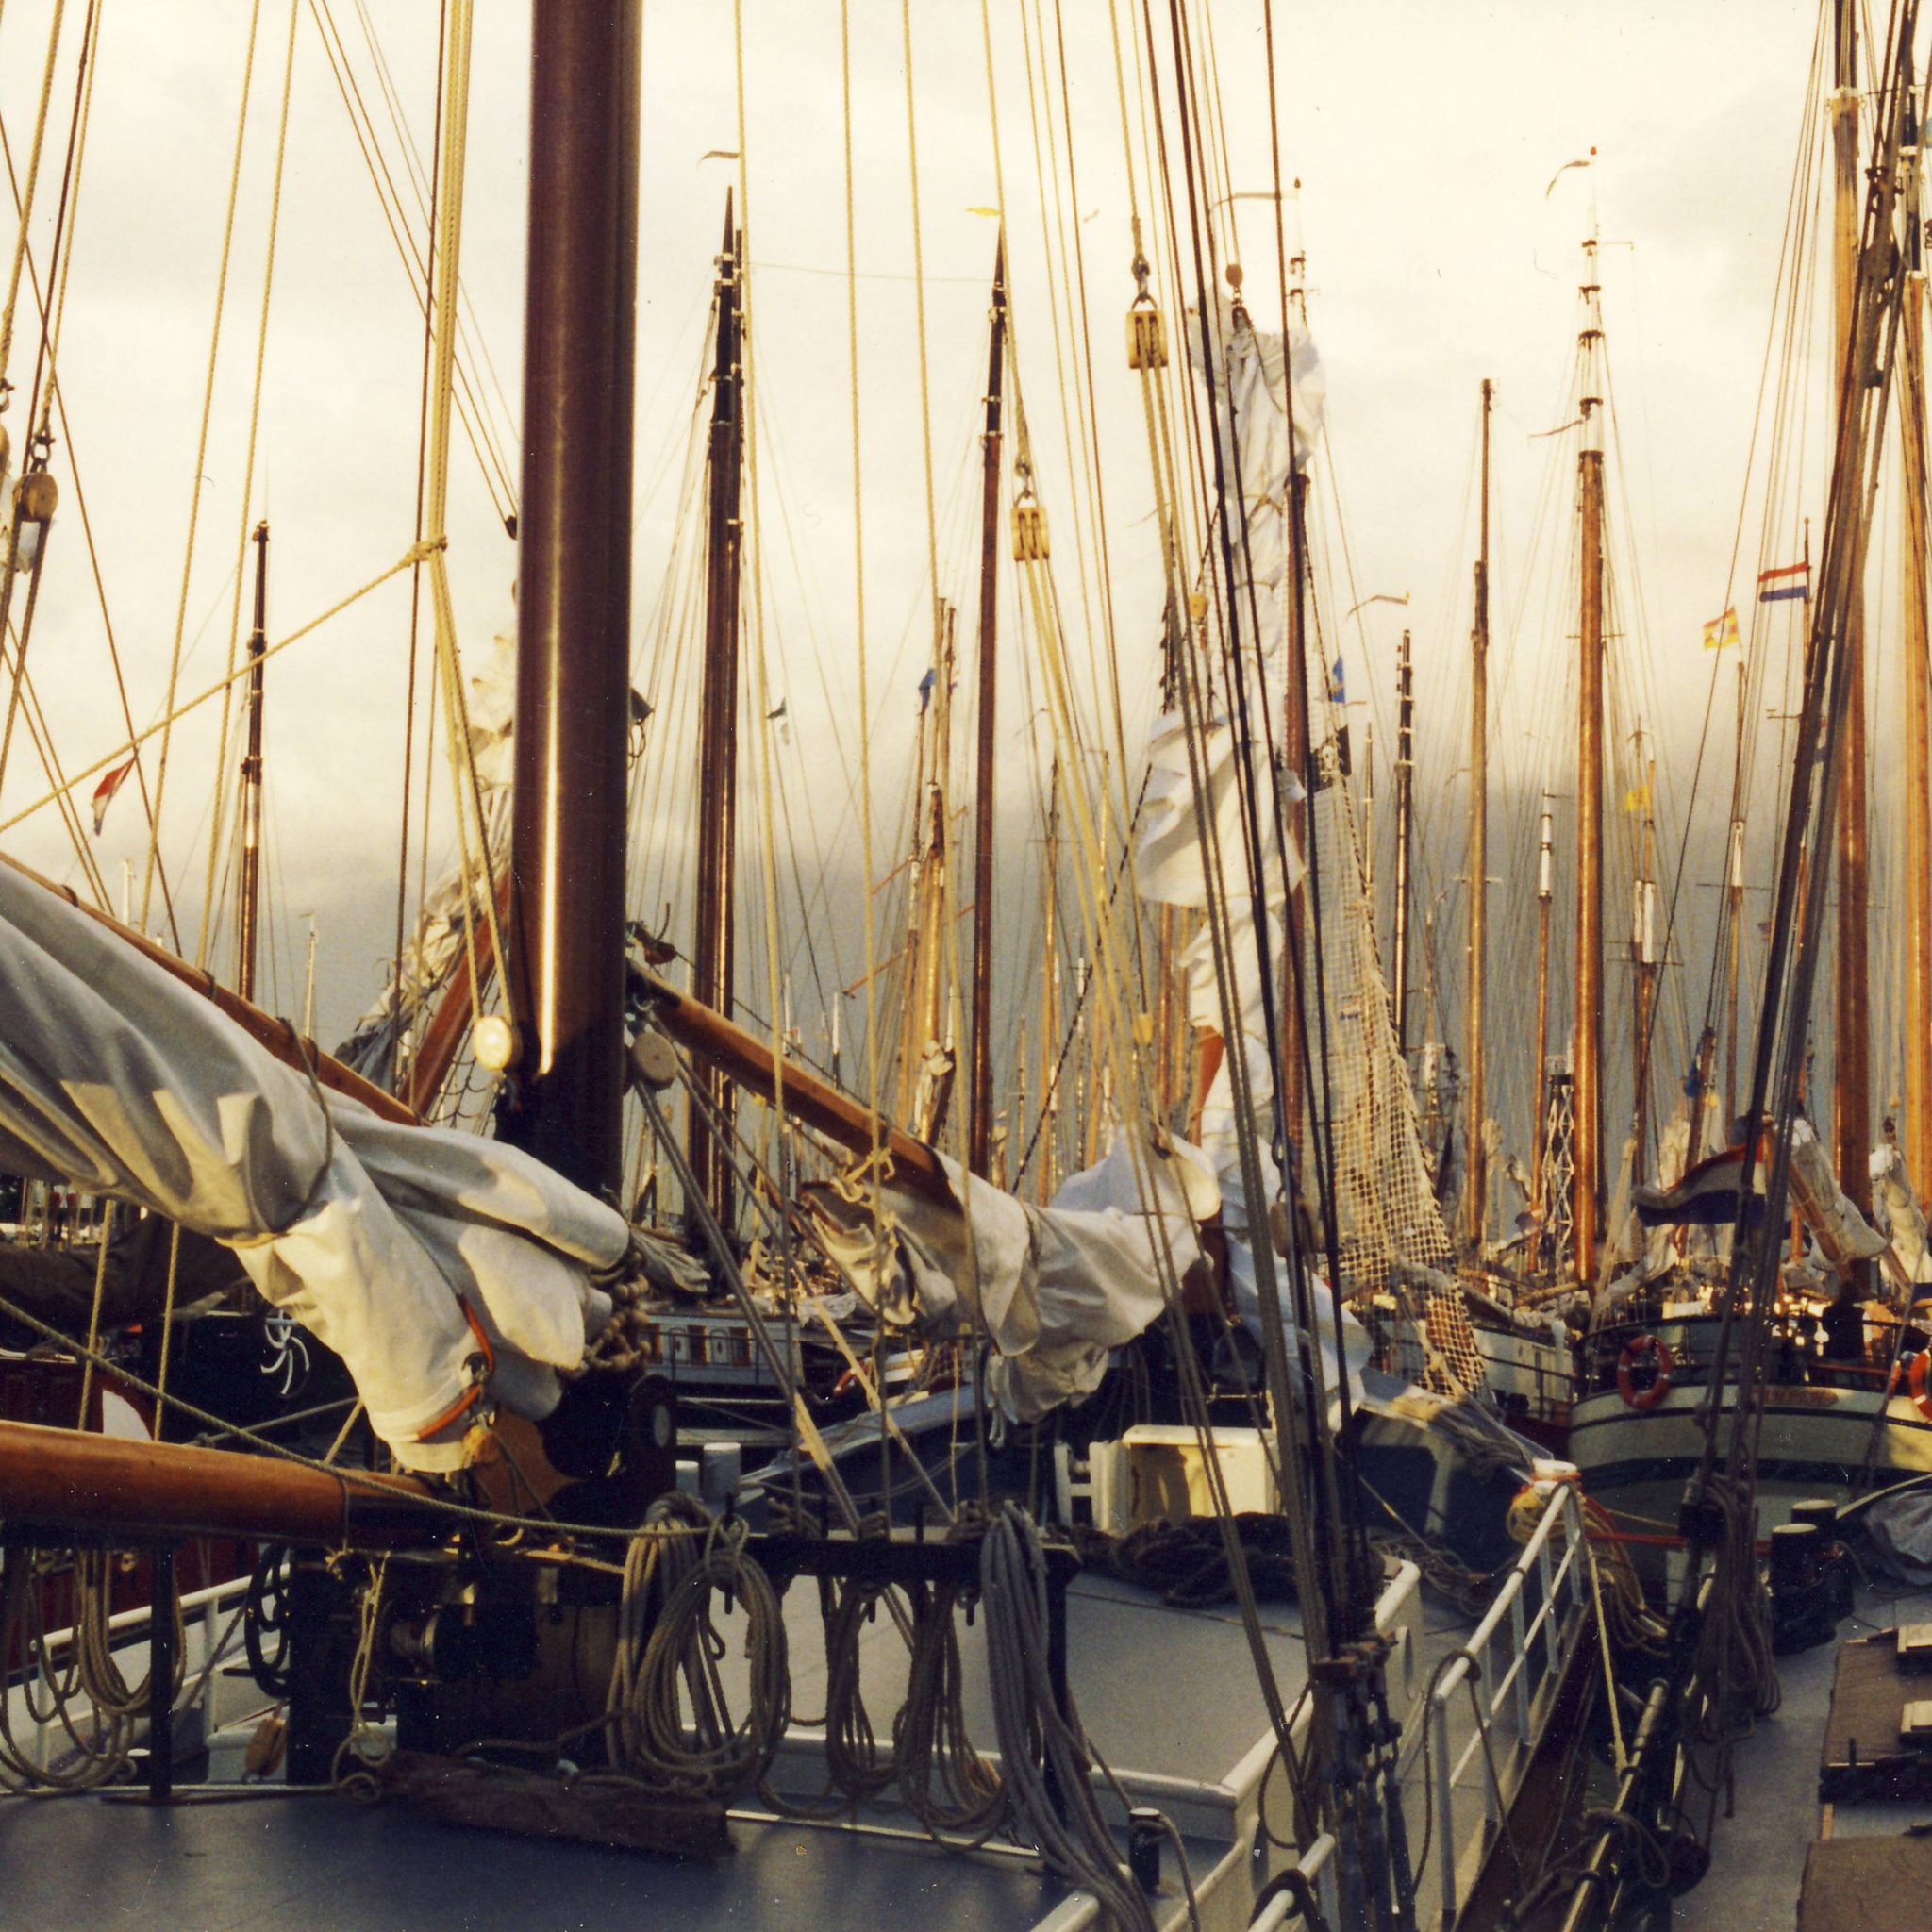 Charterschepen in de haven van Enkhuizen. (Foto Peter Fokkens)